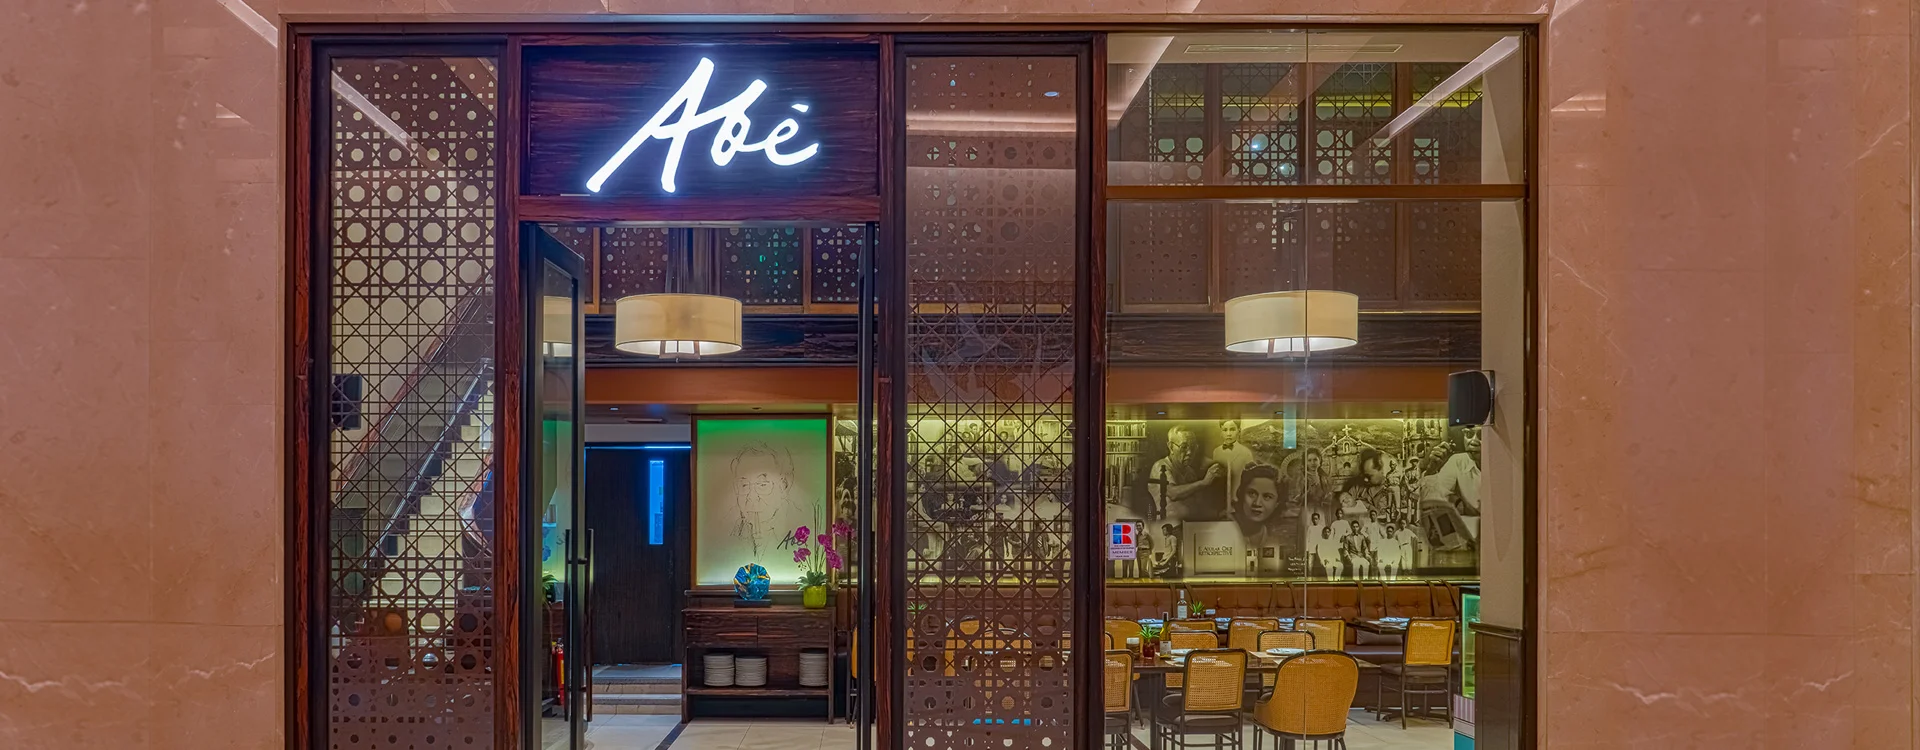 Abe_Restaurant